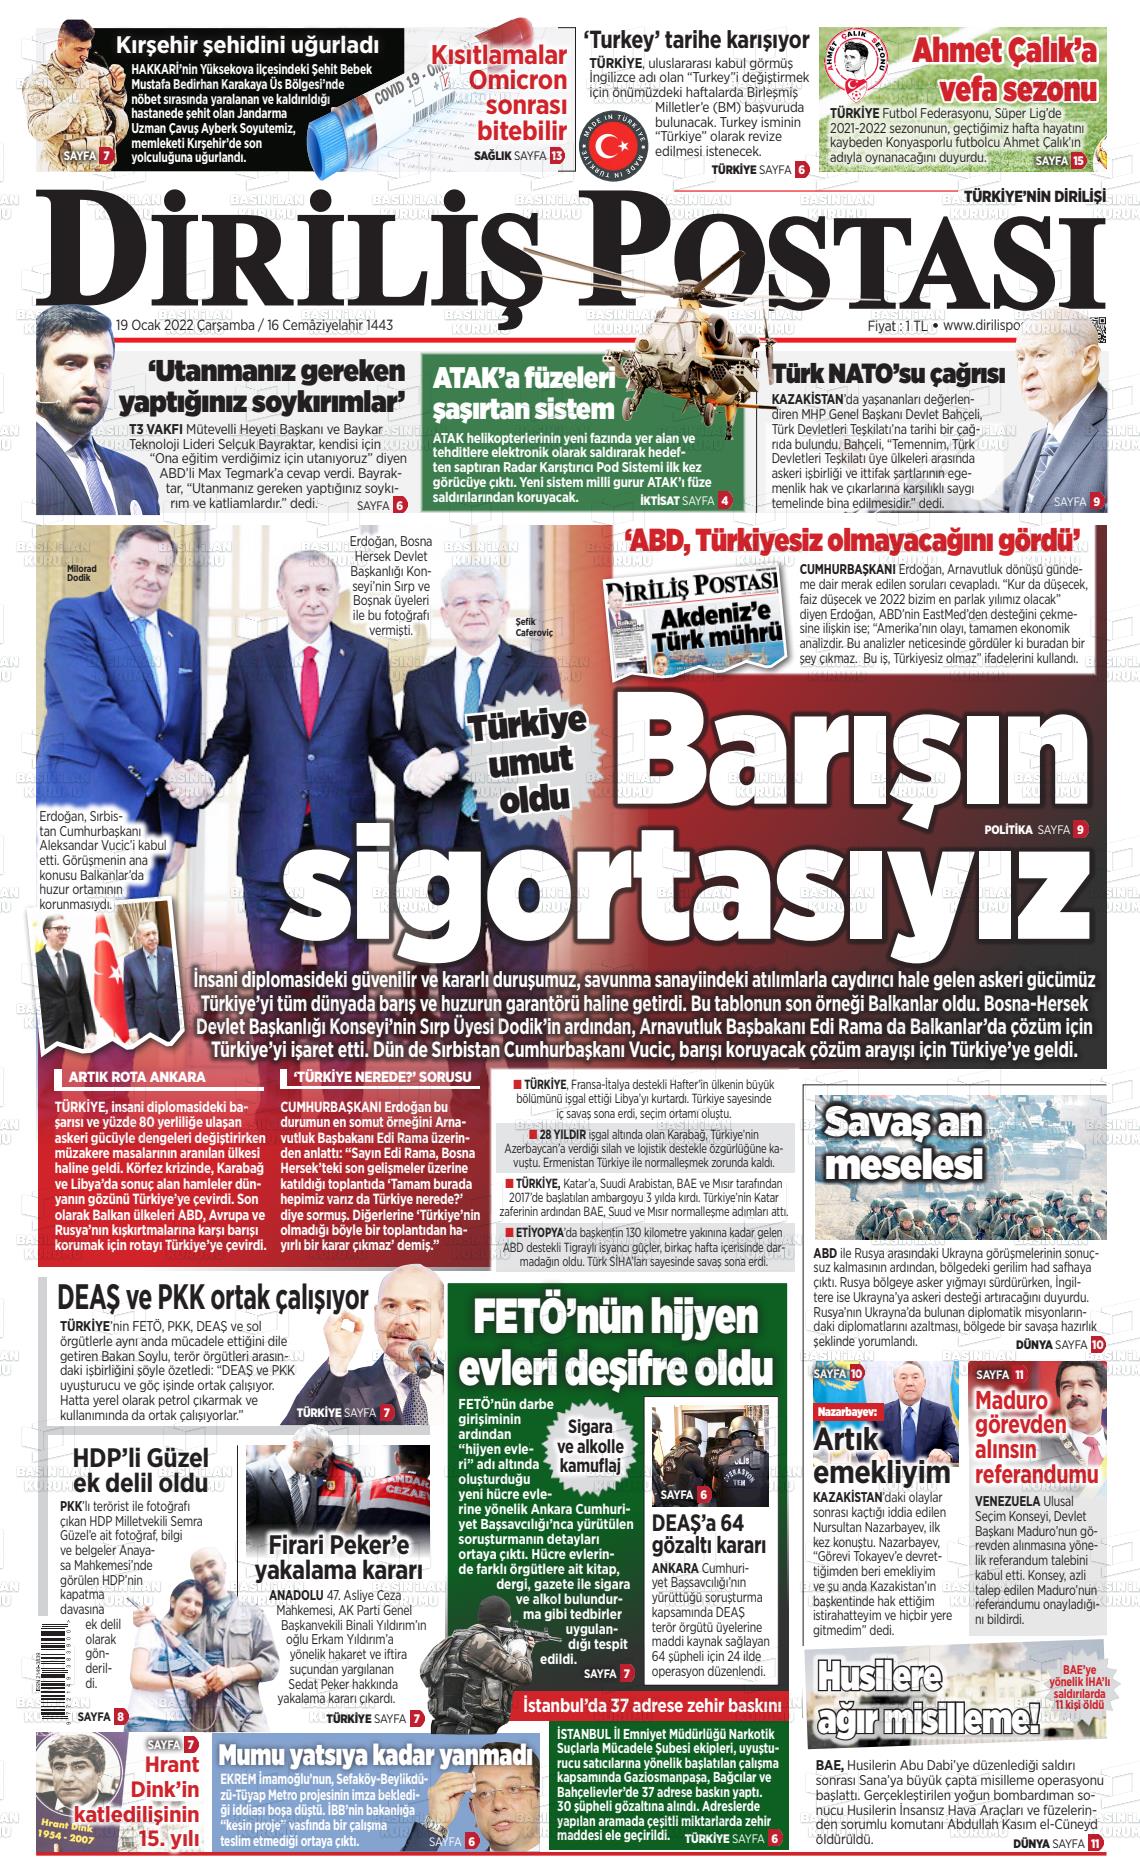 19 Ocak 2022 Diriliş Postası Gazete Manşeti